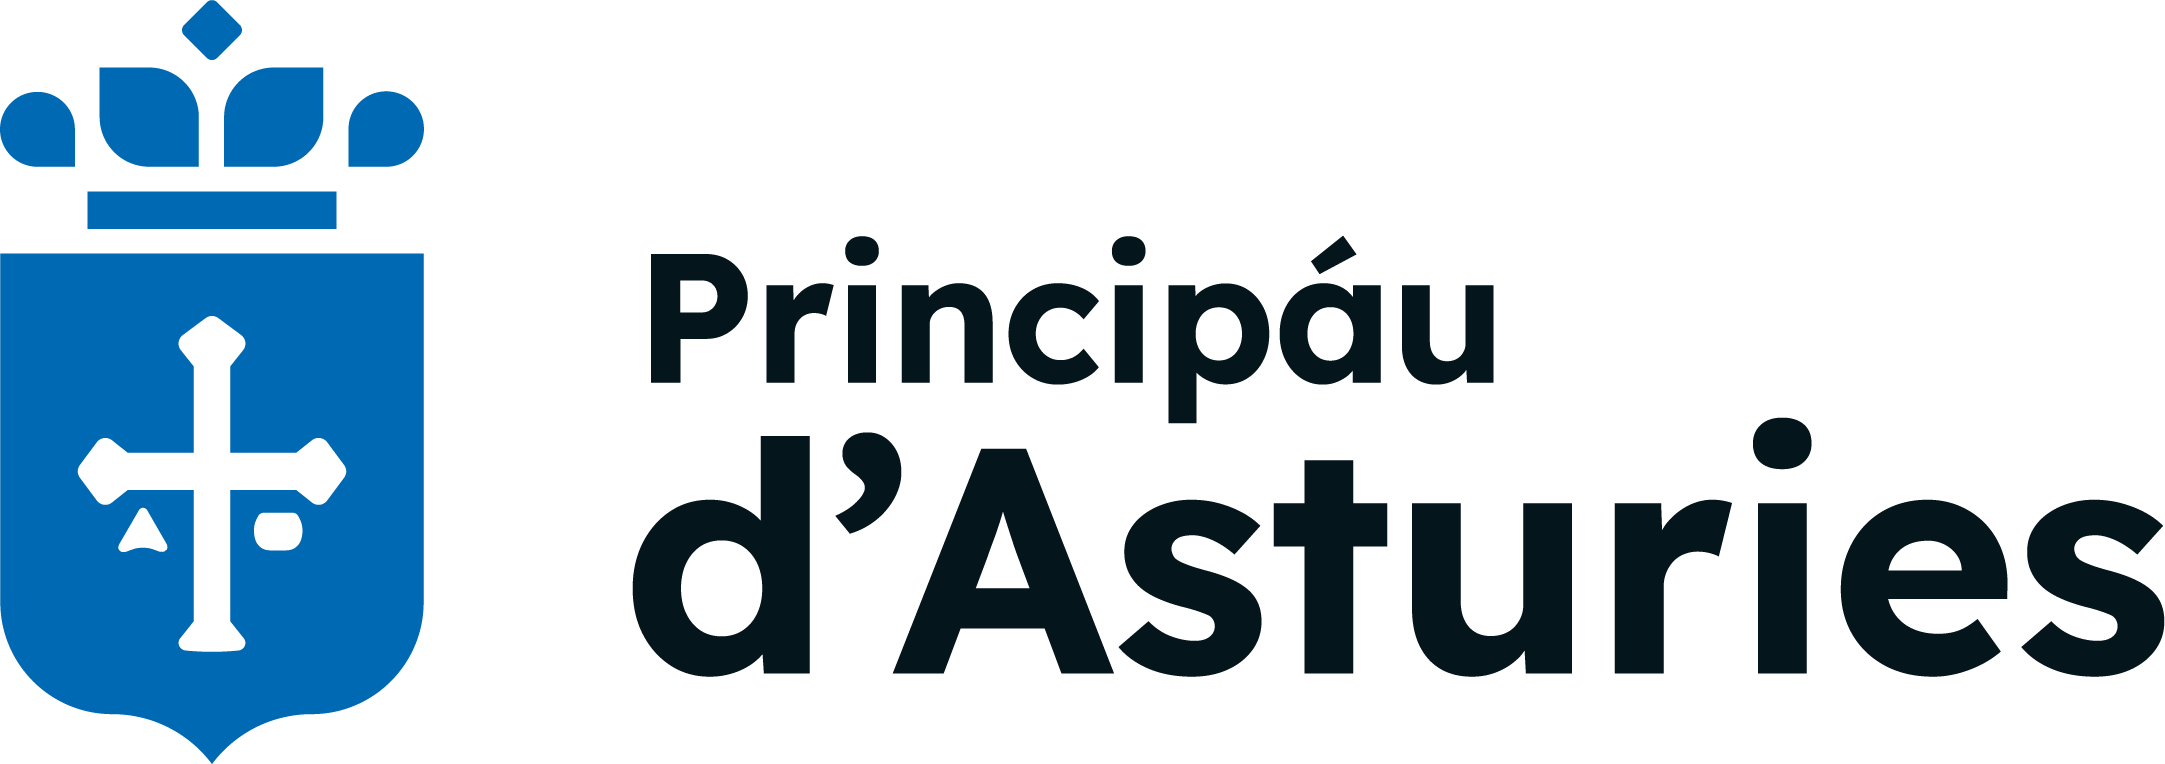 Gobierno Principado Asturias